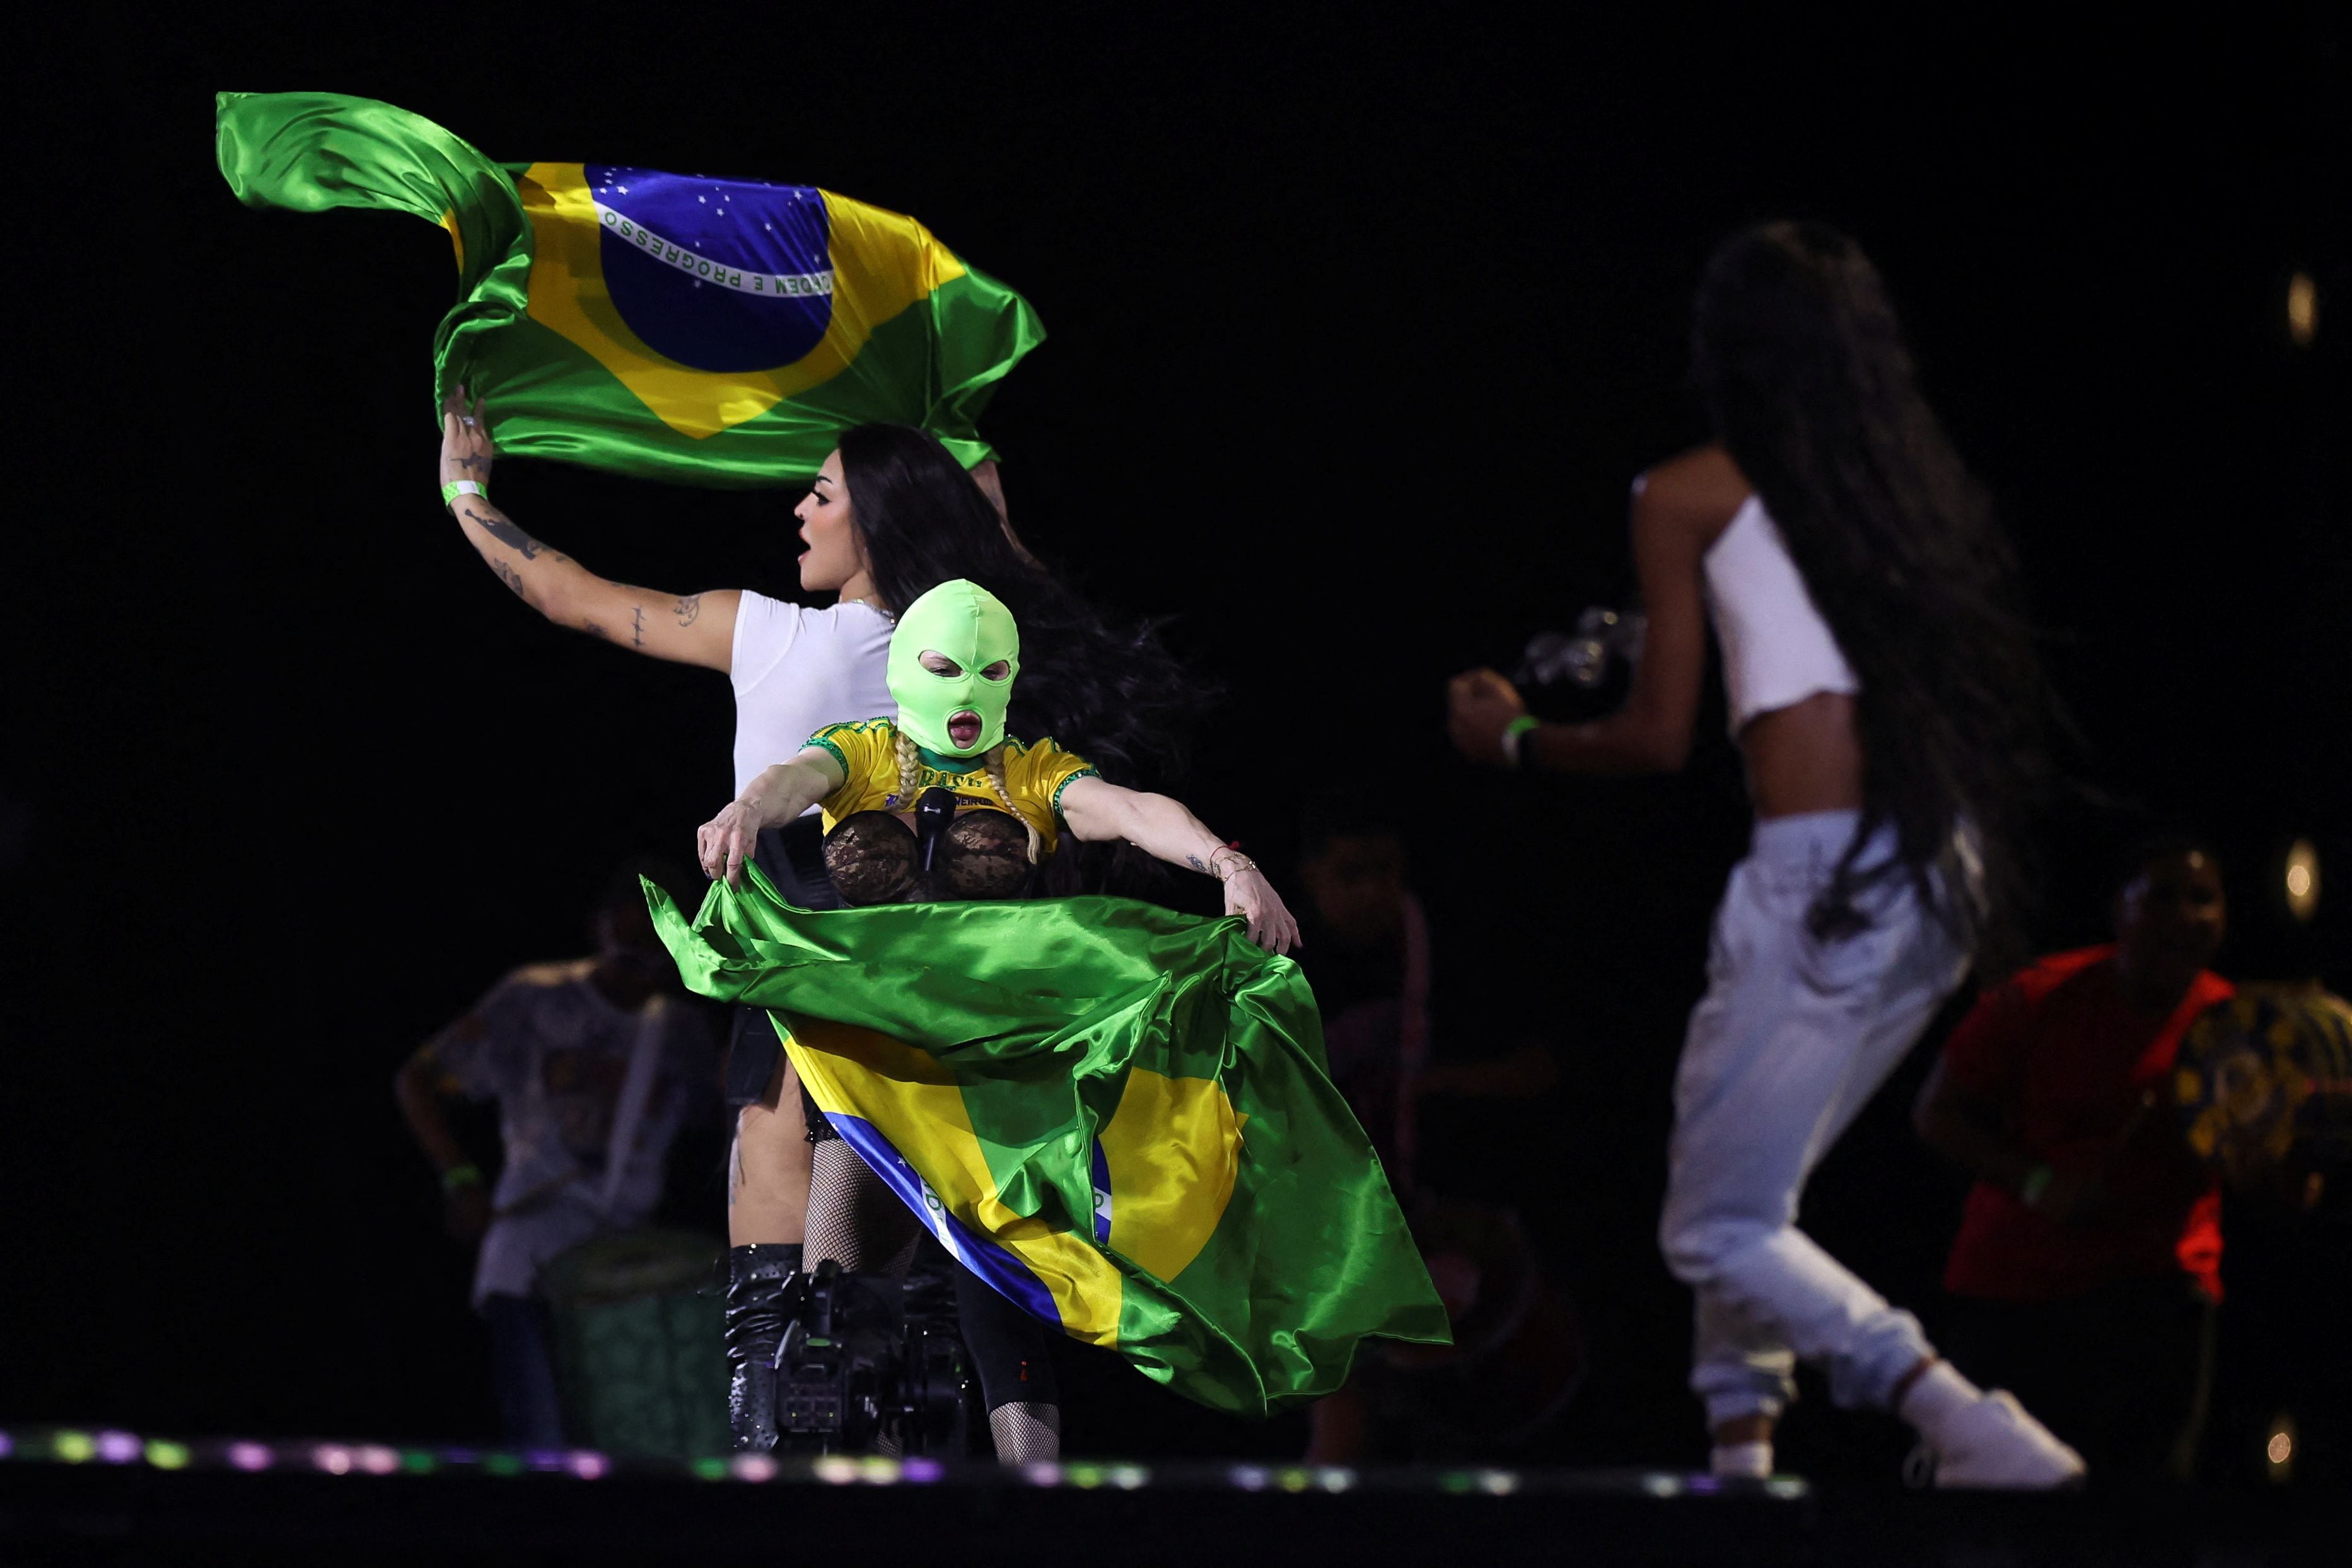 Madonna realizó un emocionante ensayo en público un dia antes del esperado concierto en Copacabana, Río de Janeiro. (Créditos: REUTERS/Pilar Olivares)